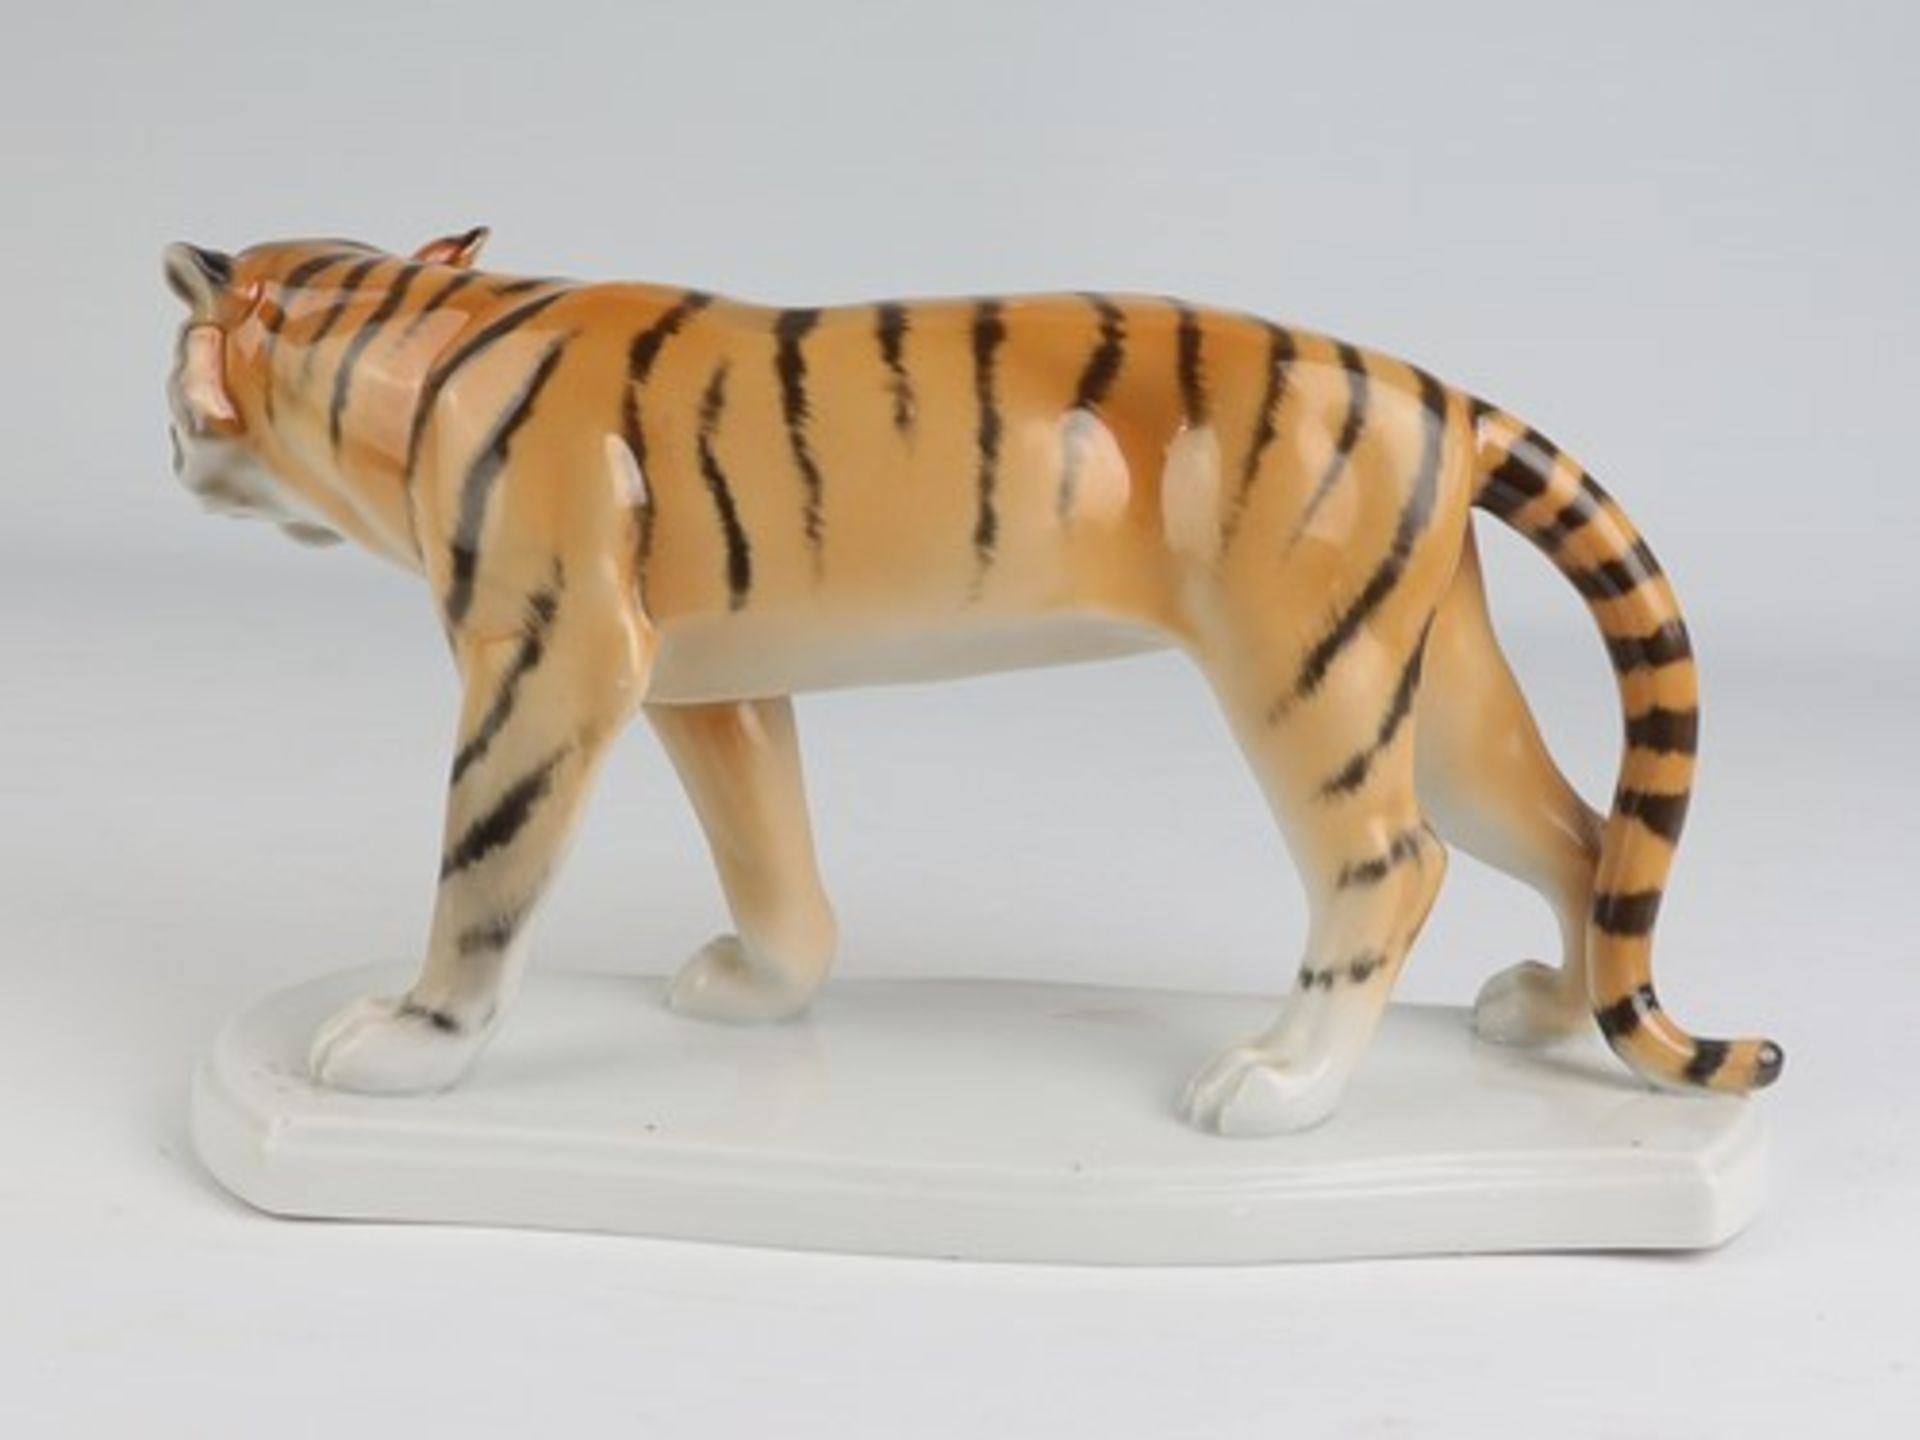 Fasold & Stauch - Figurgrüne Marke, Modellnr. 16328, geschwungener Stand, stehender Tiger, min. - Bild 3 aus 6